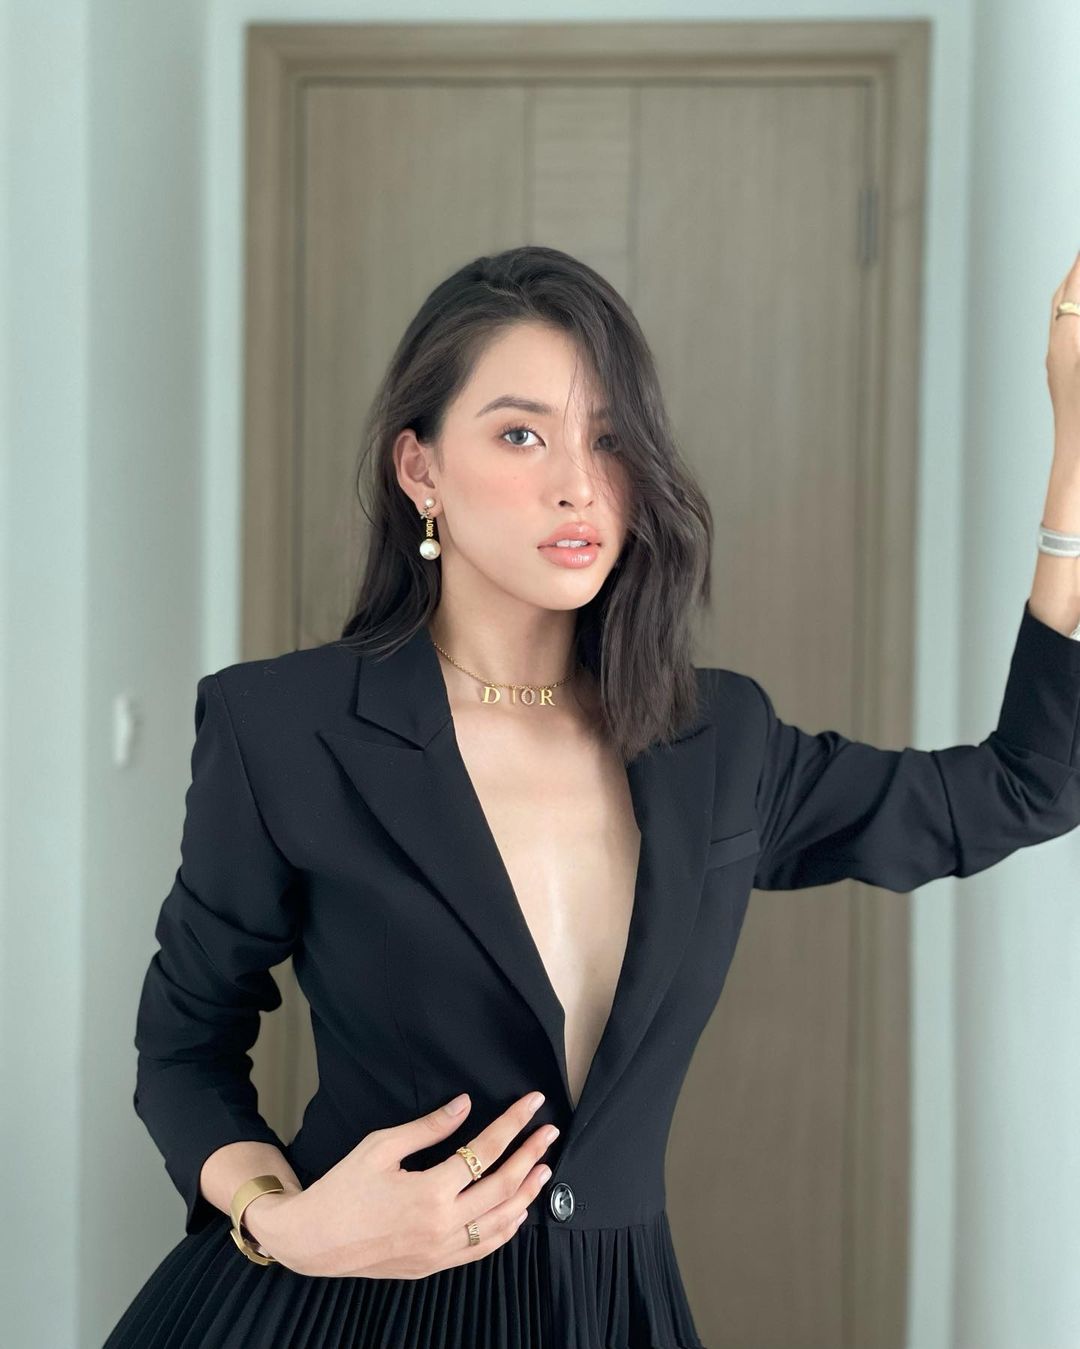 Hoa hậu Trần Tiểu Vy đăng tải hình ảnh mới trên Instagram cá nhân. Vẻ đẹp gợi cảm, sắc sảo của cô được nhiều người liên tưởng tới nhân vật miêu nữ.